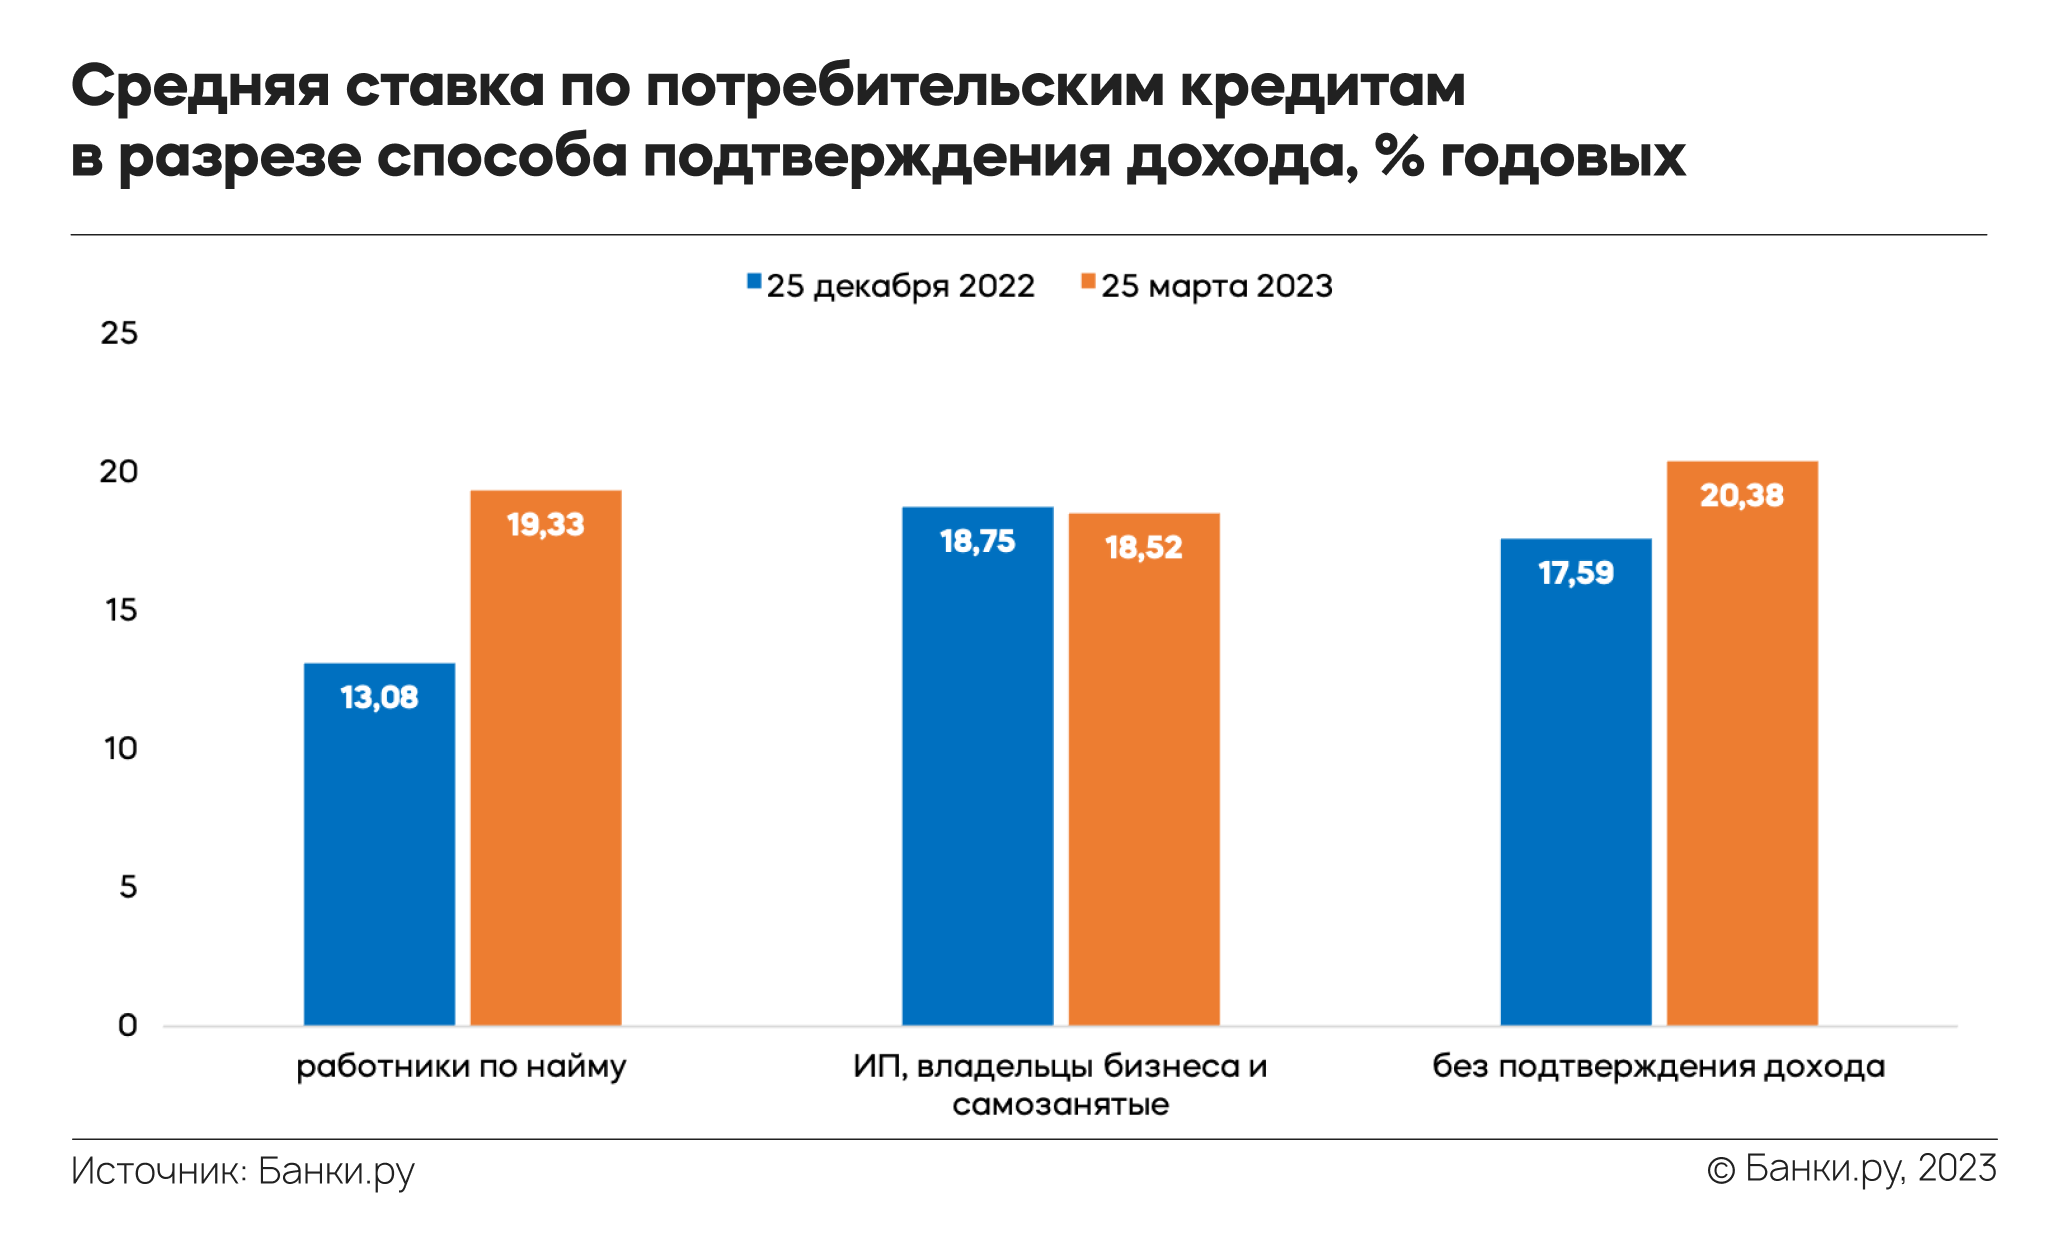 Индекс Банки.ру: средняя ставка по потребительским кредитам в I квартале  2023 года составила 19,52%, по кредитным картам — 30,62% годовых |  Аналитические исследования | Банки.ру